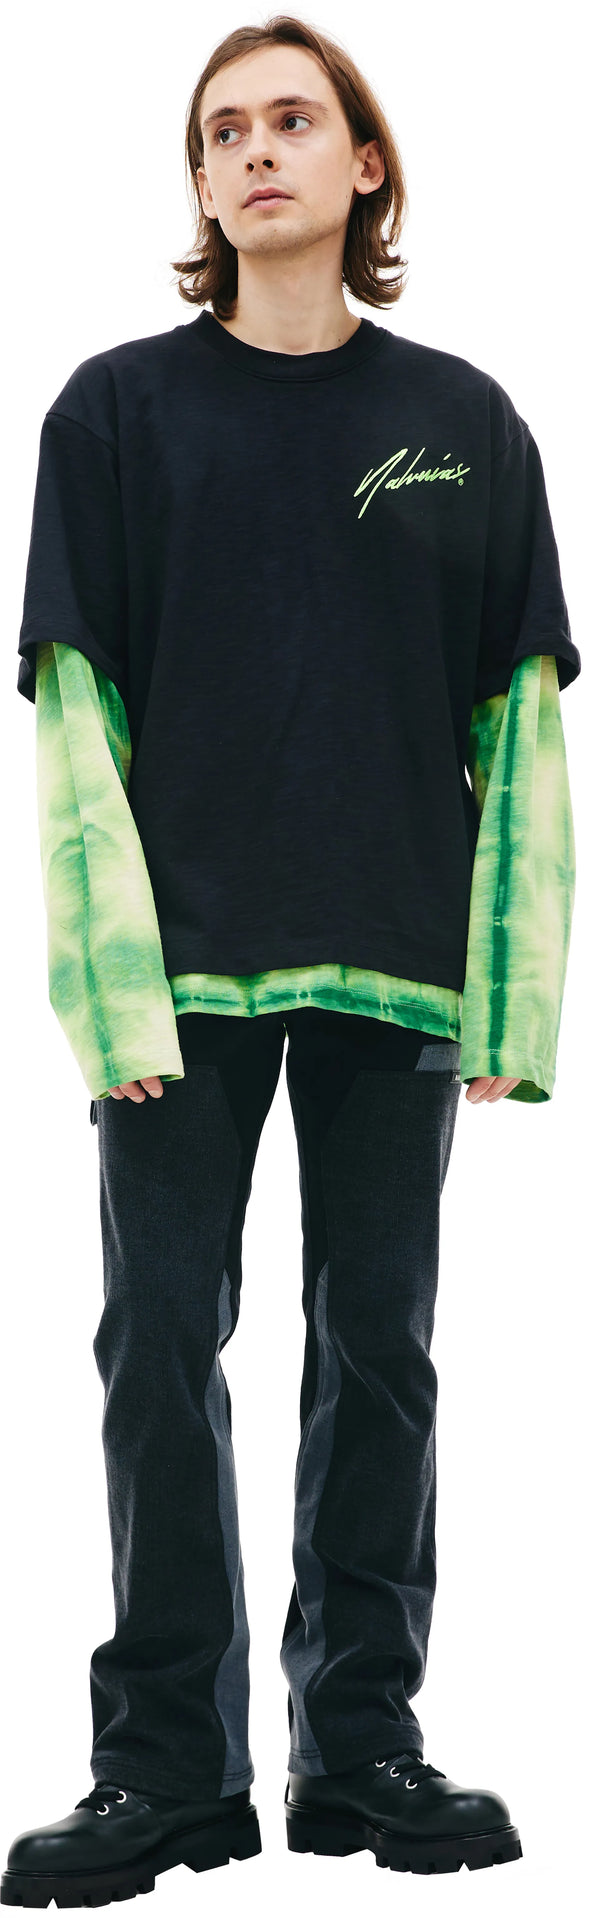 Double Sleeve Top (Green Tye Dye)